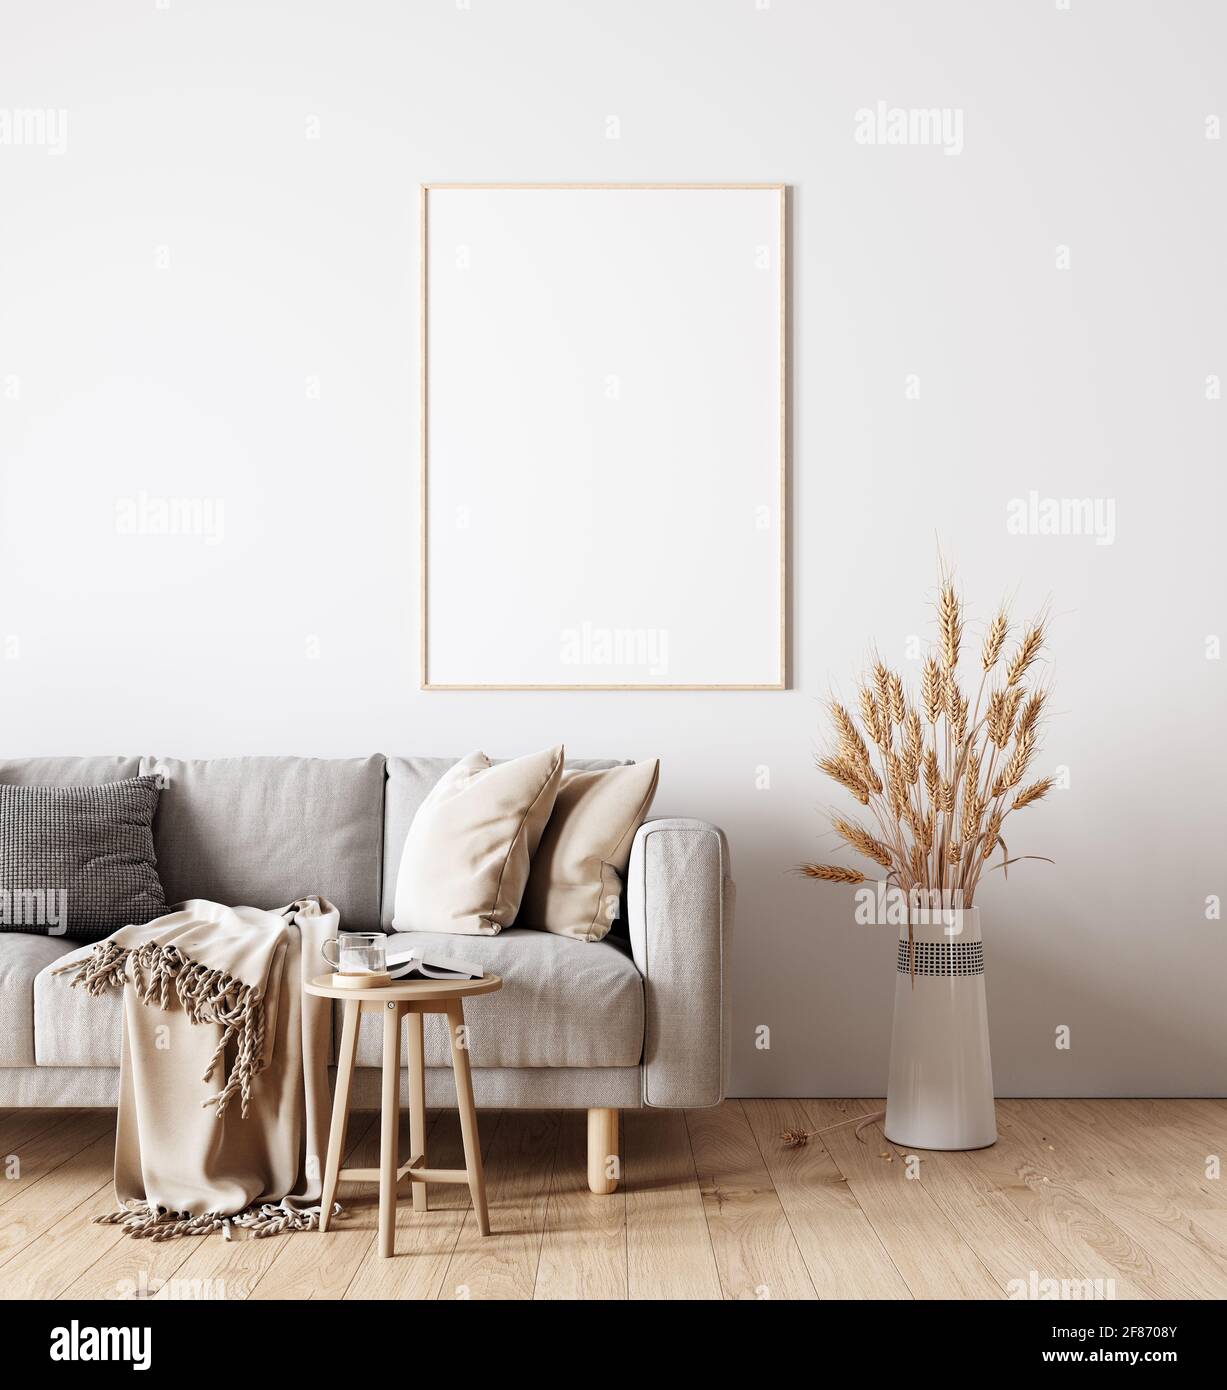 Interni dal design moderno del soggiorno in colori naturali con decorazione di piante asciutte e bianco mock up cornice immagine Rendering 3D Foto Stock